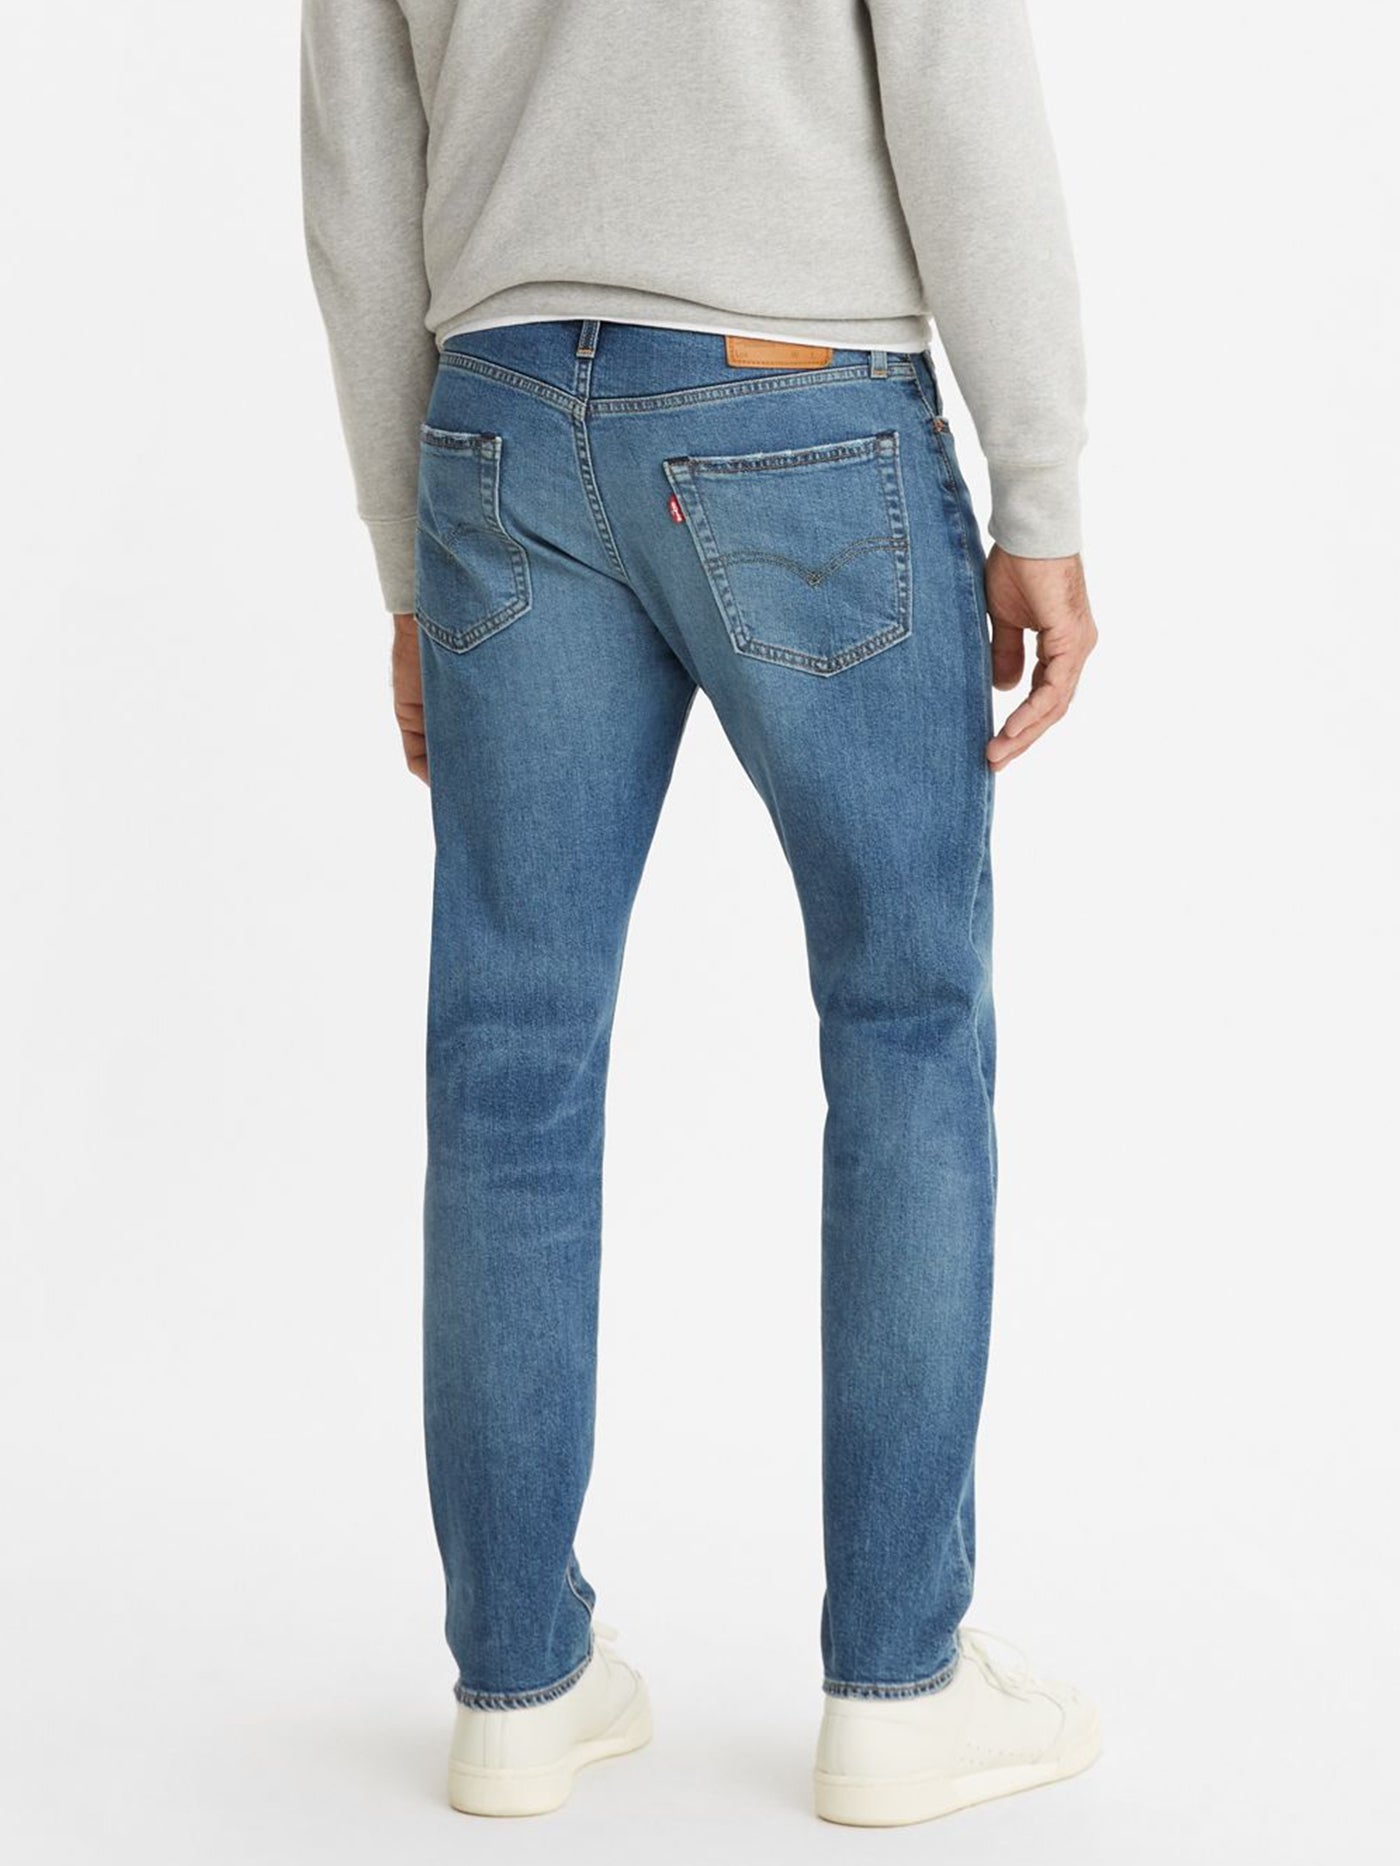 Levi's 502 Taper Flex Jeans